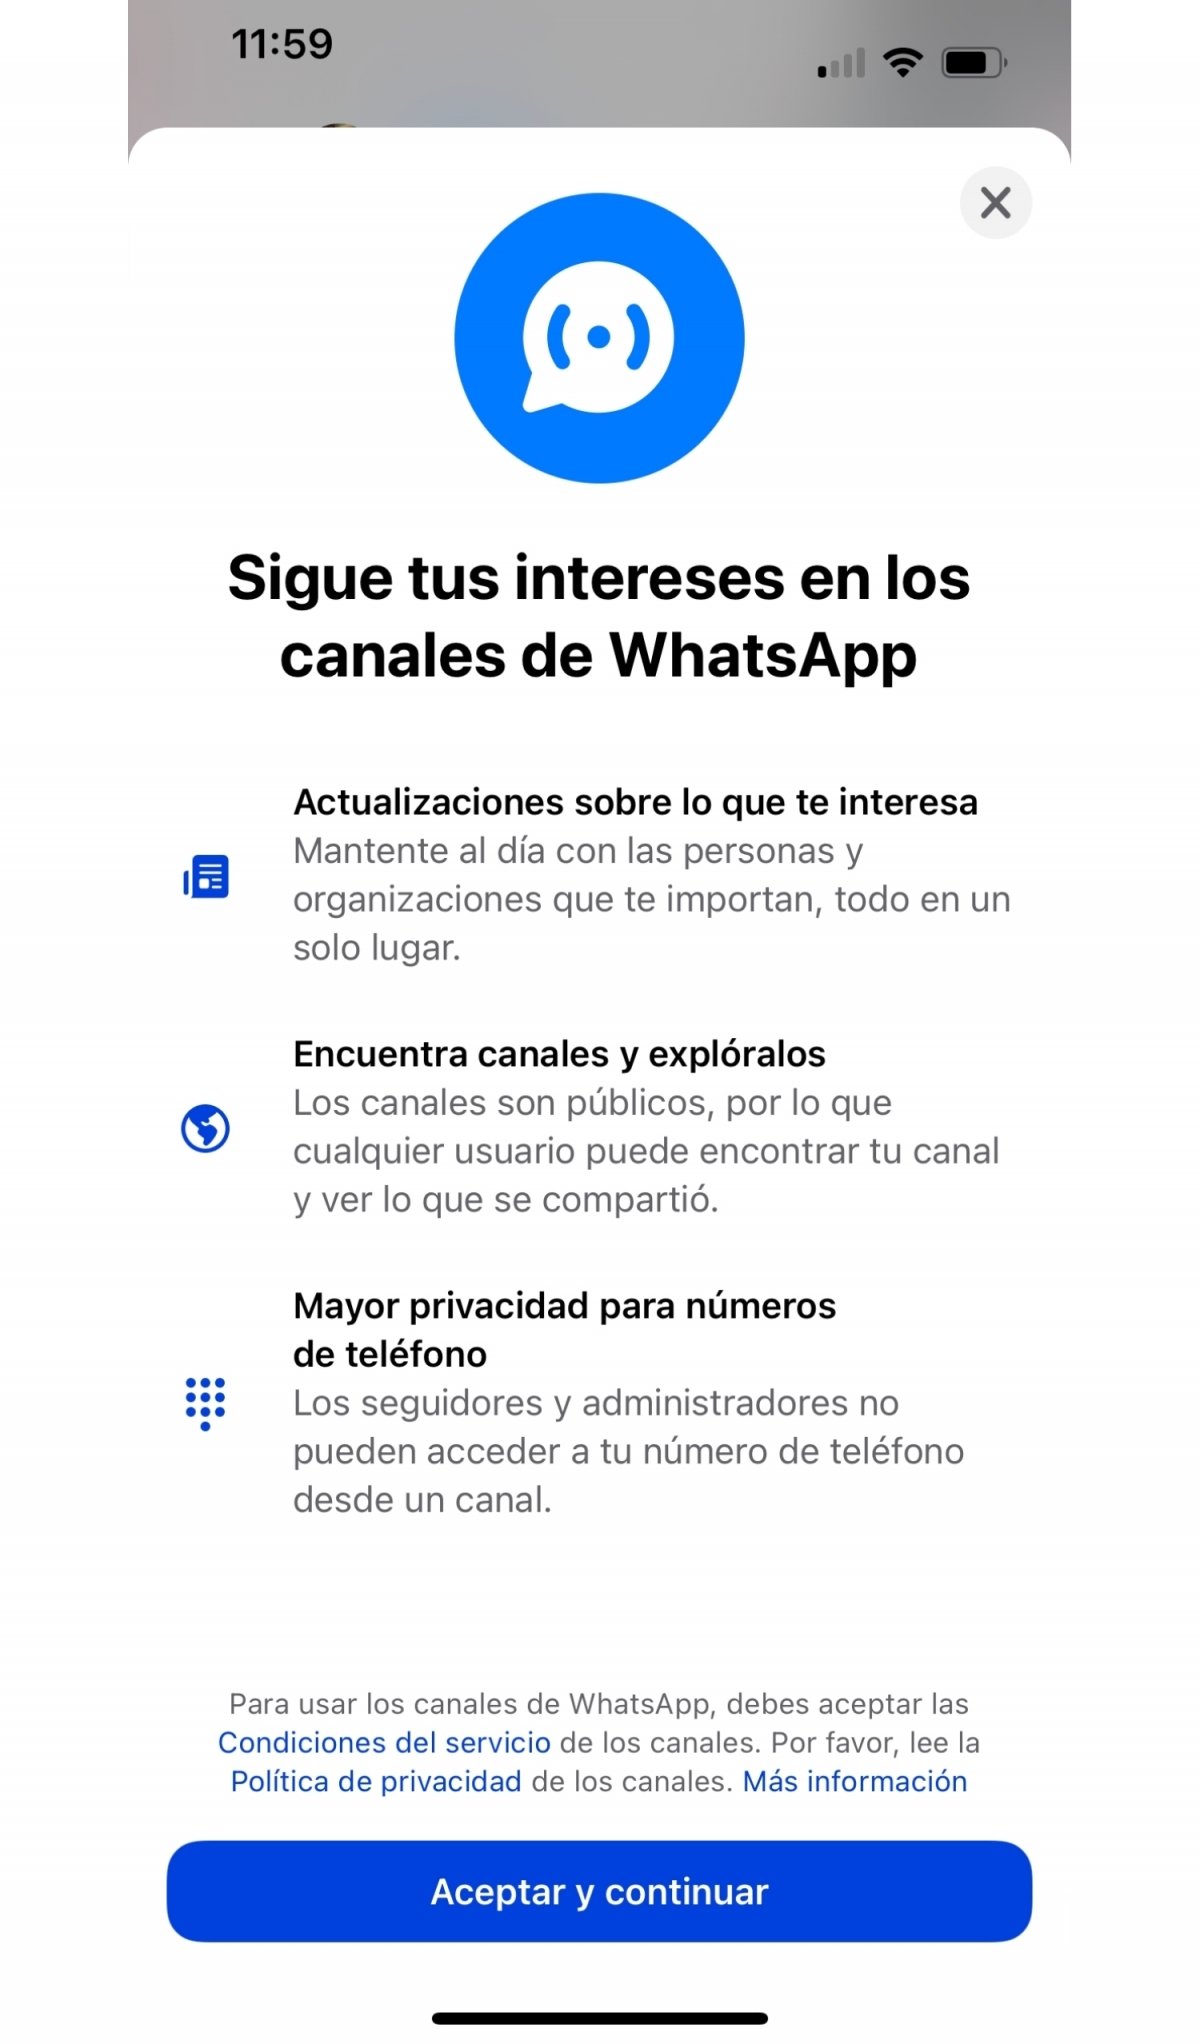 La primera vez que usas los canales de WhatsApp debes aceptar sus condiciones de uso